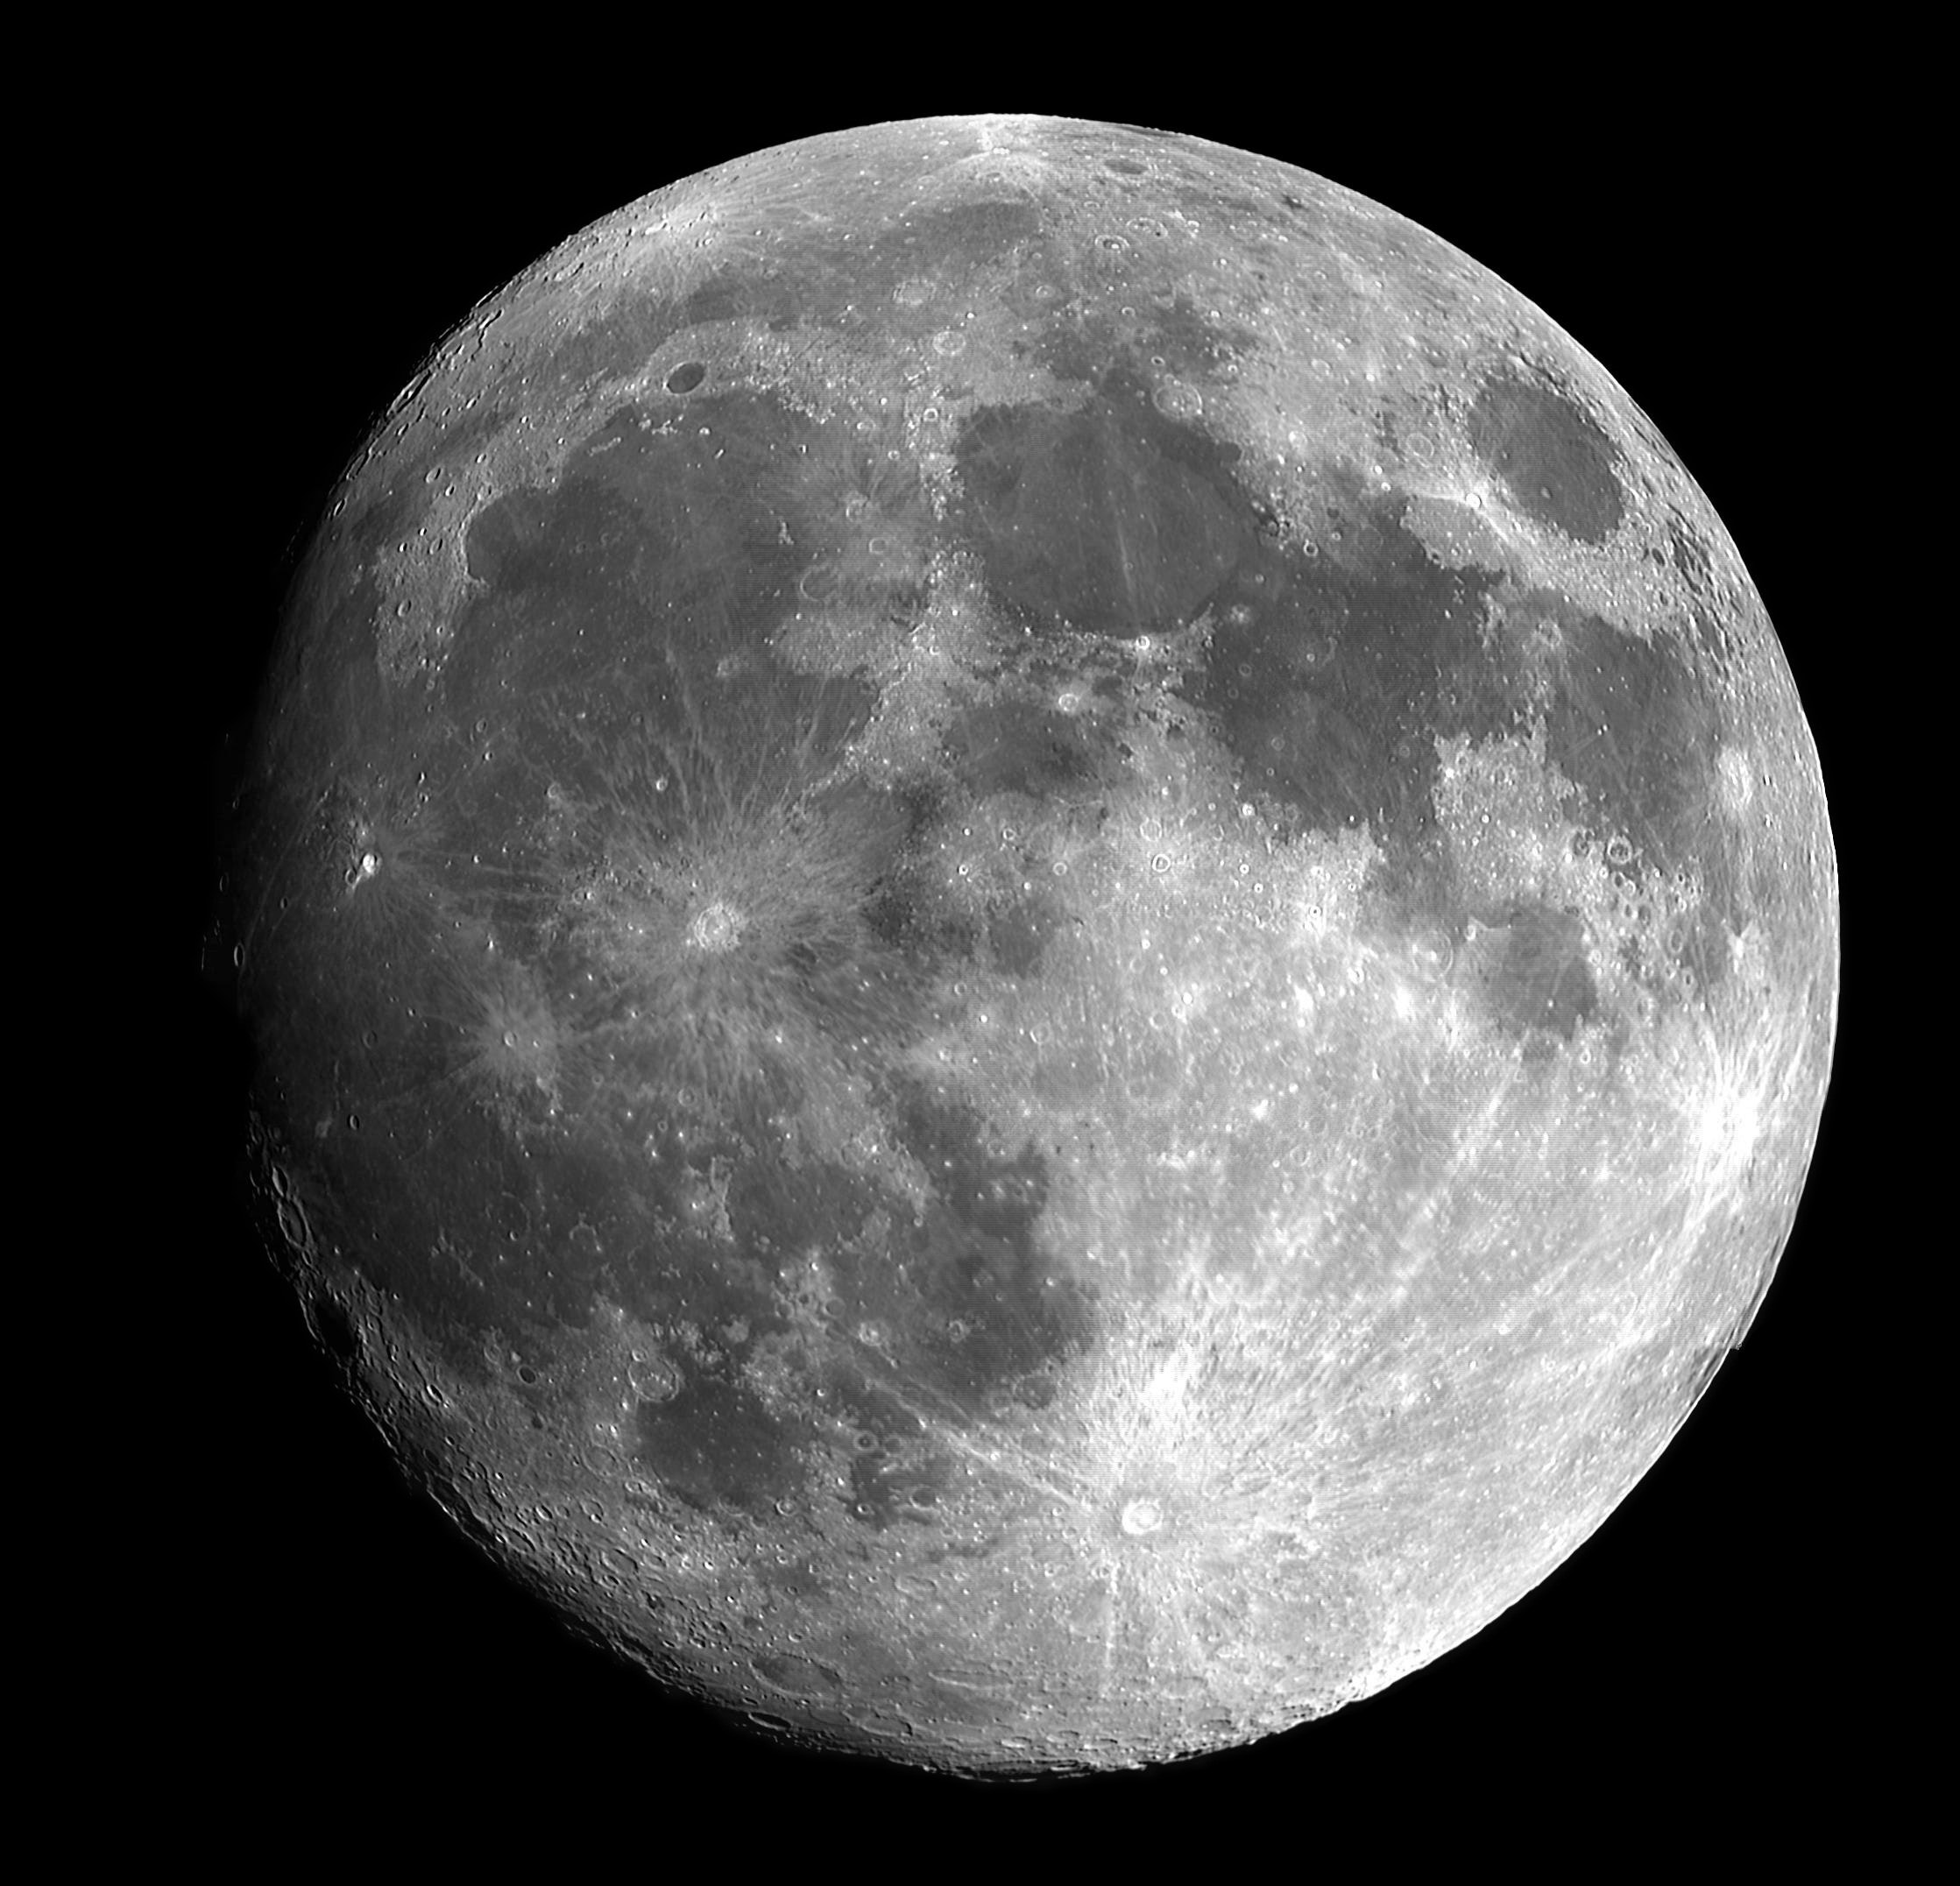 Observatório Antares promove evento para comemorar o Dia da Lua